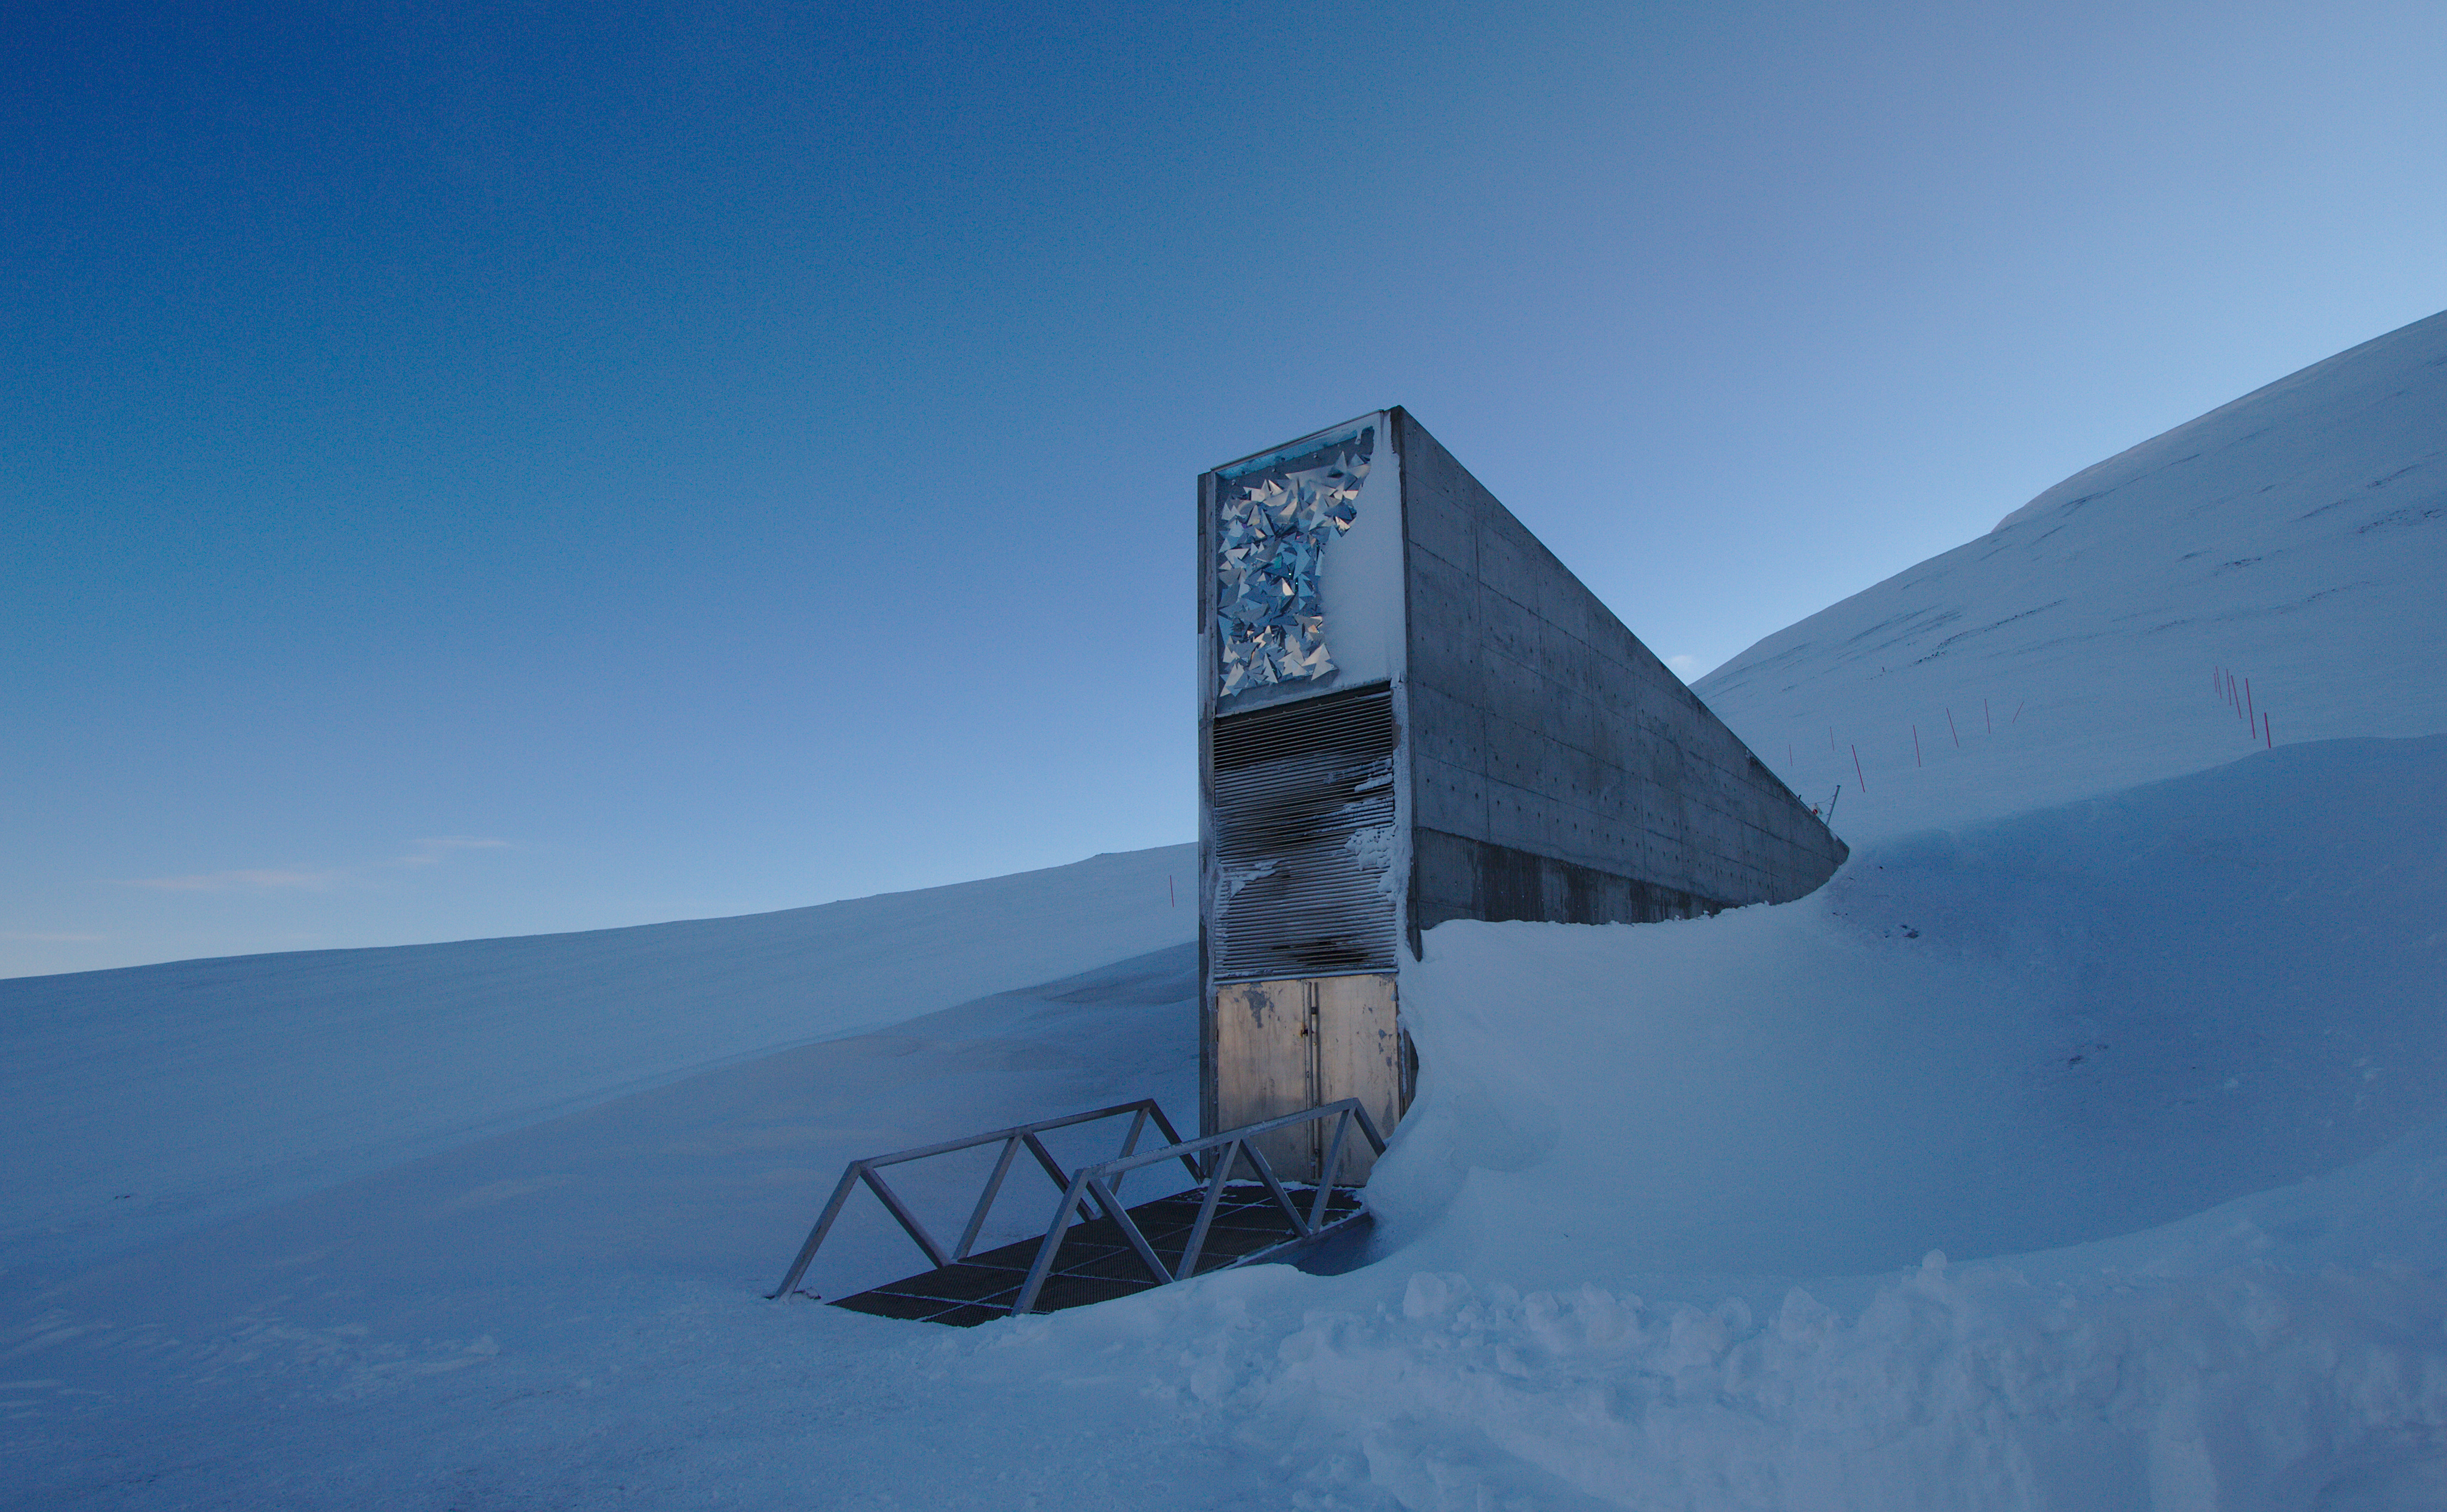 C'est sur l'archipel du Svalbard (Norvège), tout au nord de l'océan Atlantique, qu'a été lancé le projet de Réserve mondiale de semences, destiné aux générations futures. © Einar Jørgen Haraldseid from Gjøvik, Norway, Wikimedia Commons, CC by-sa 2.0